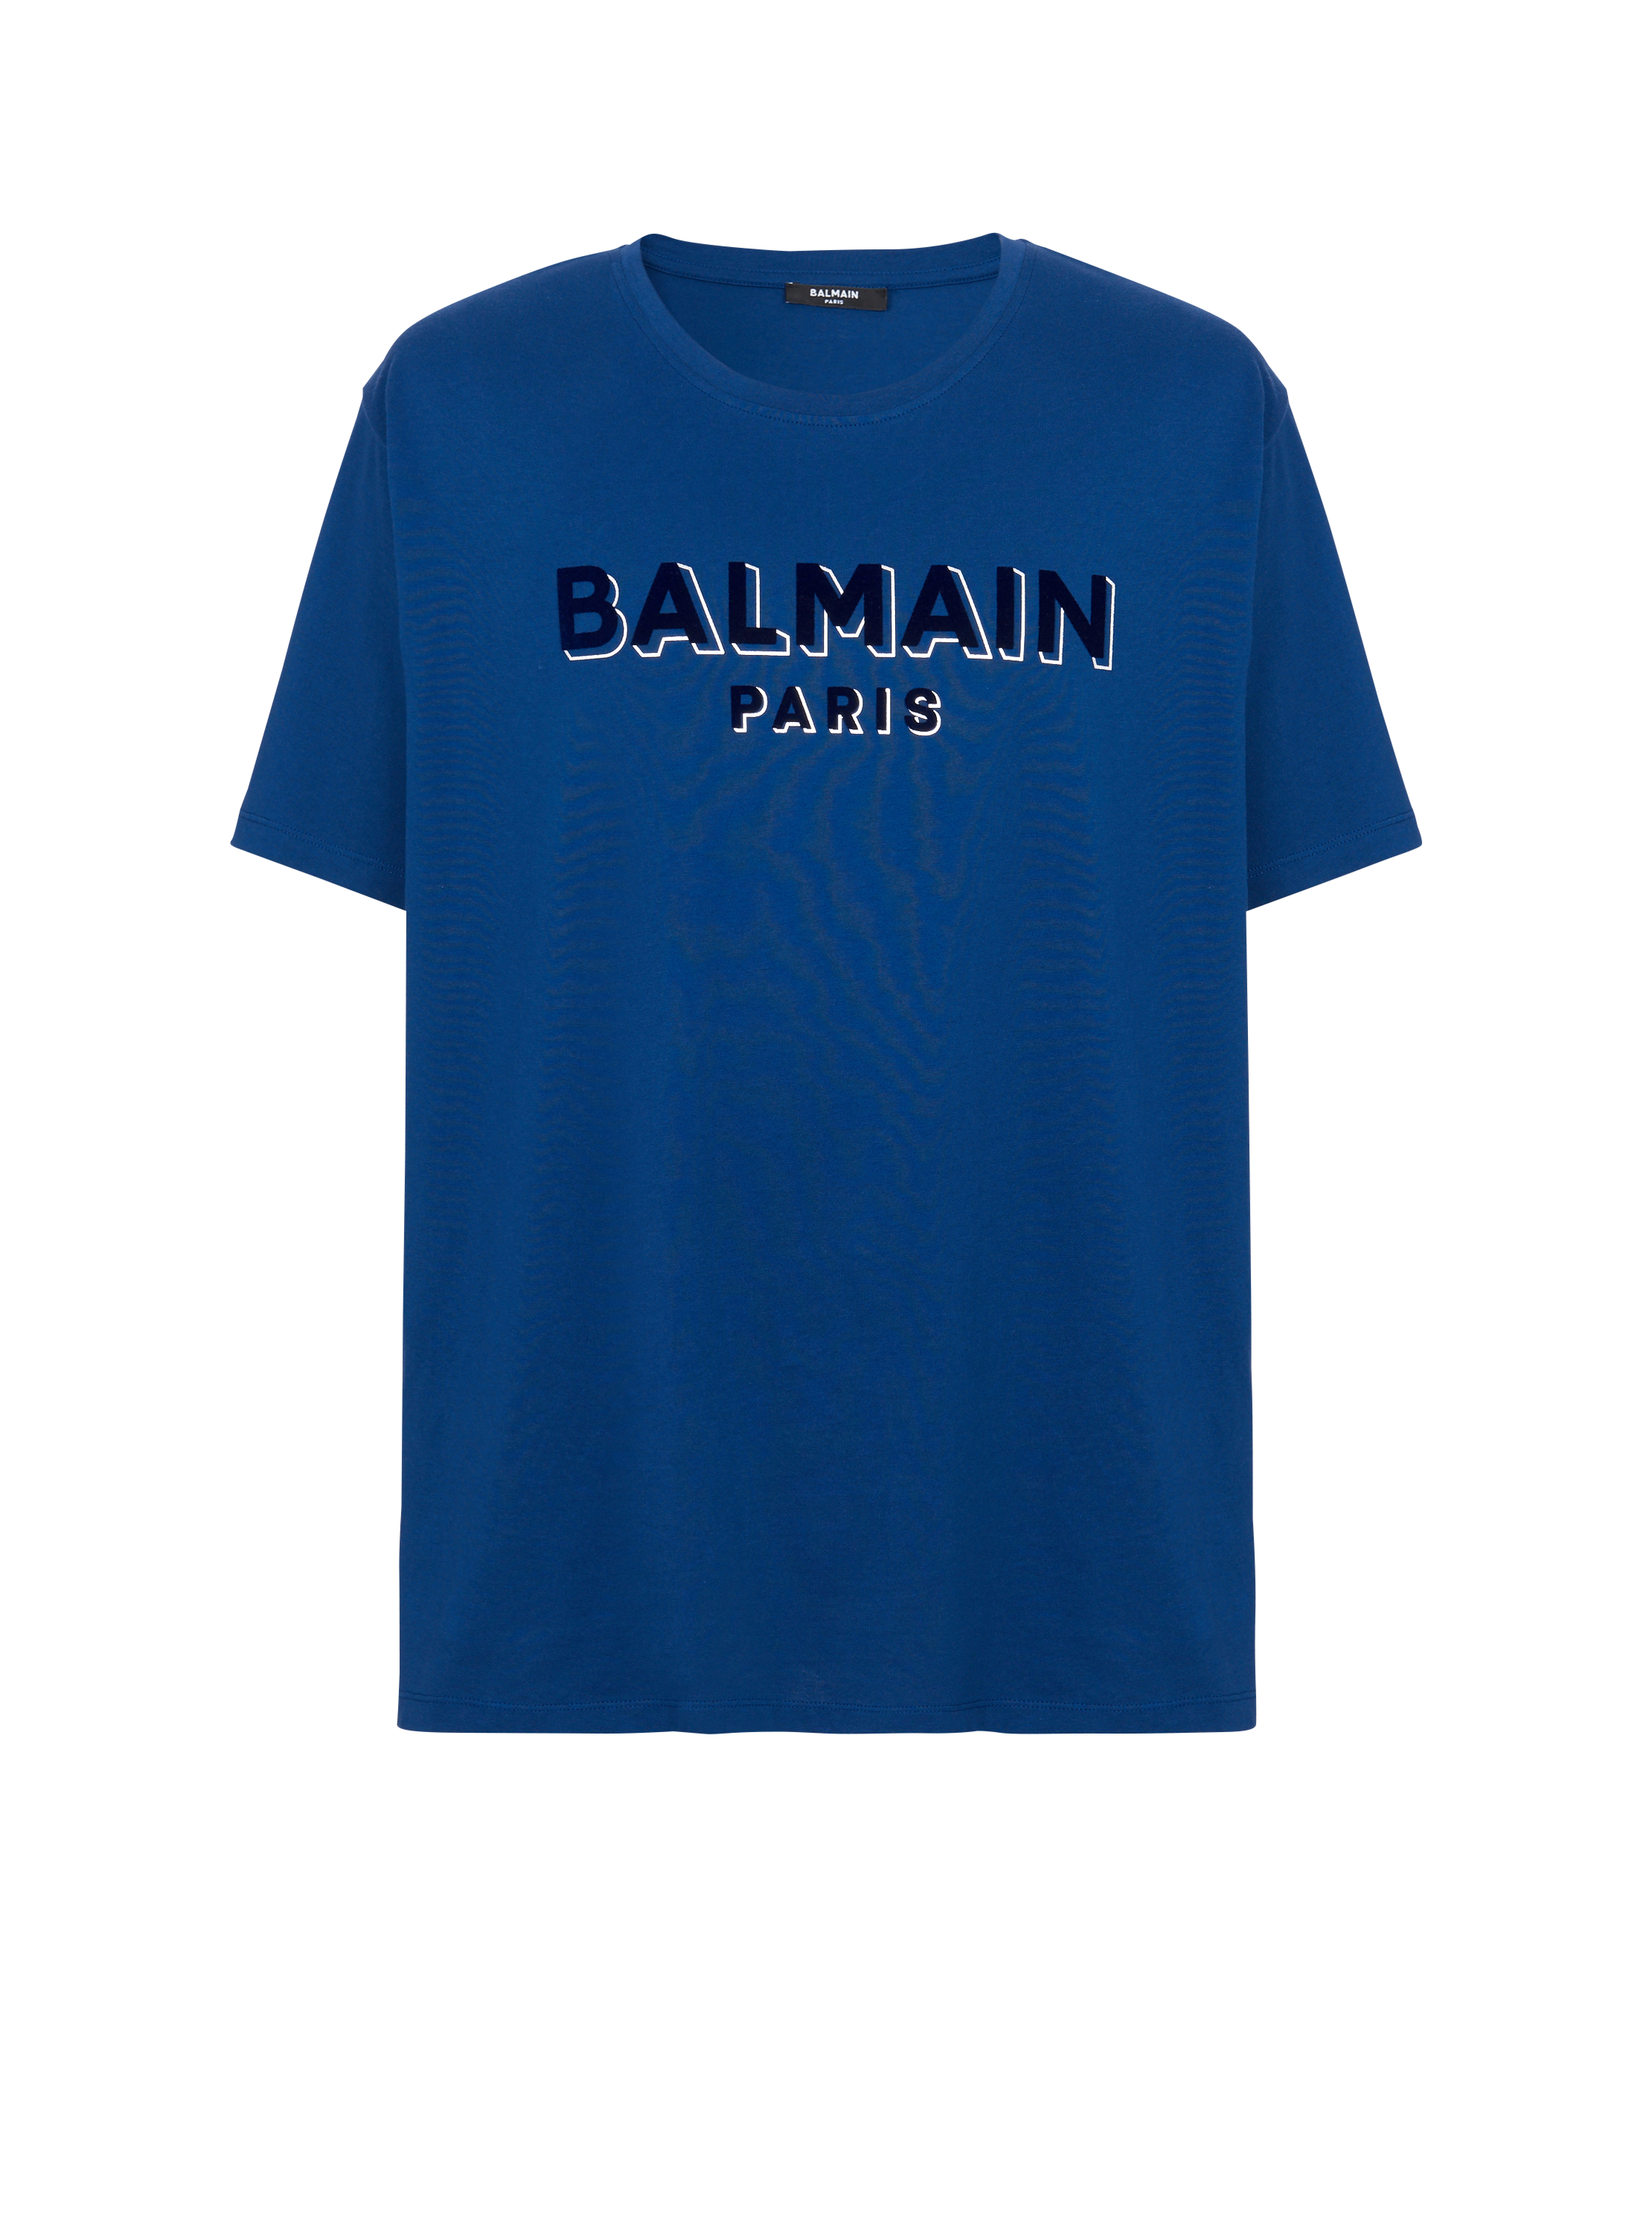 T-shirt Balmain floqué métallisé, bleu marine, hi-res